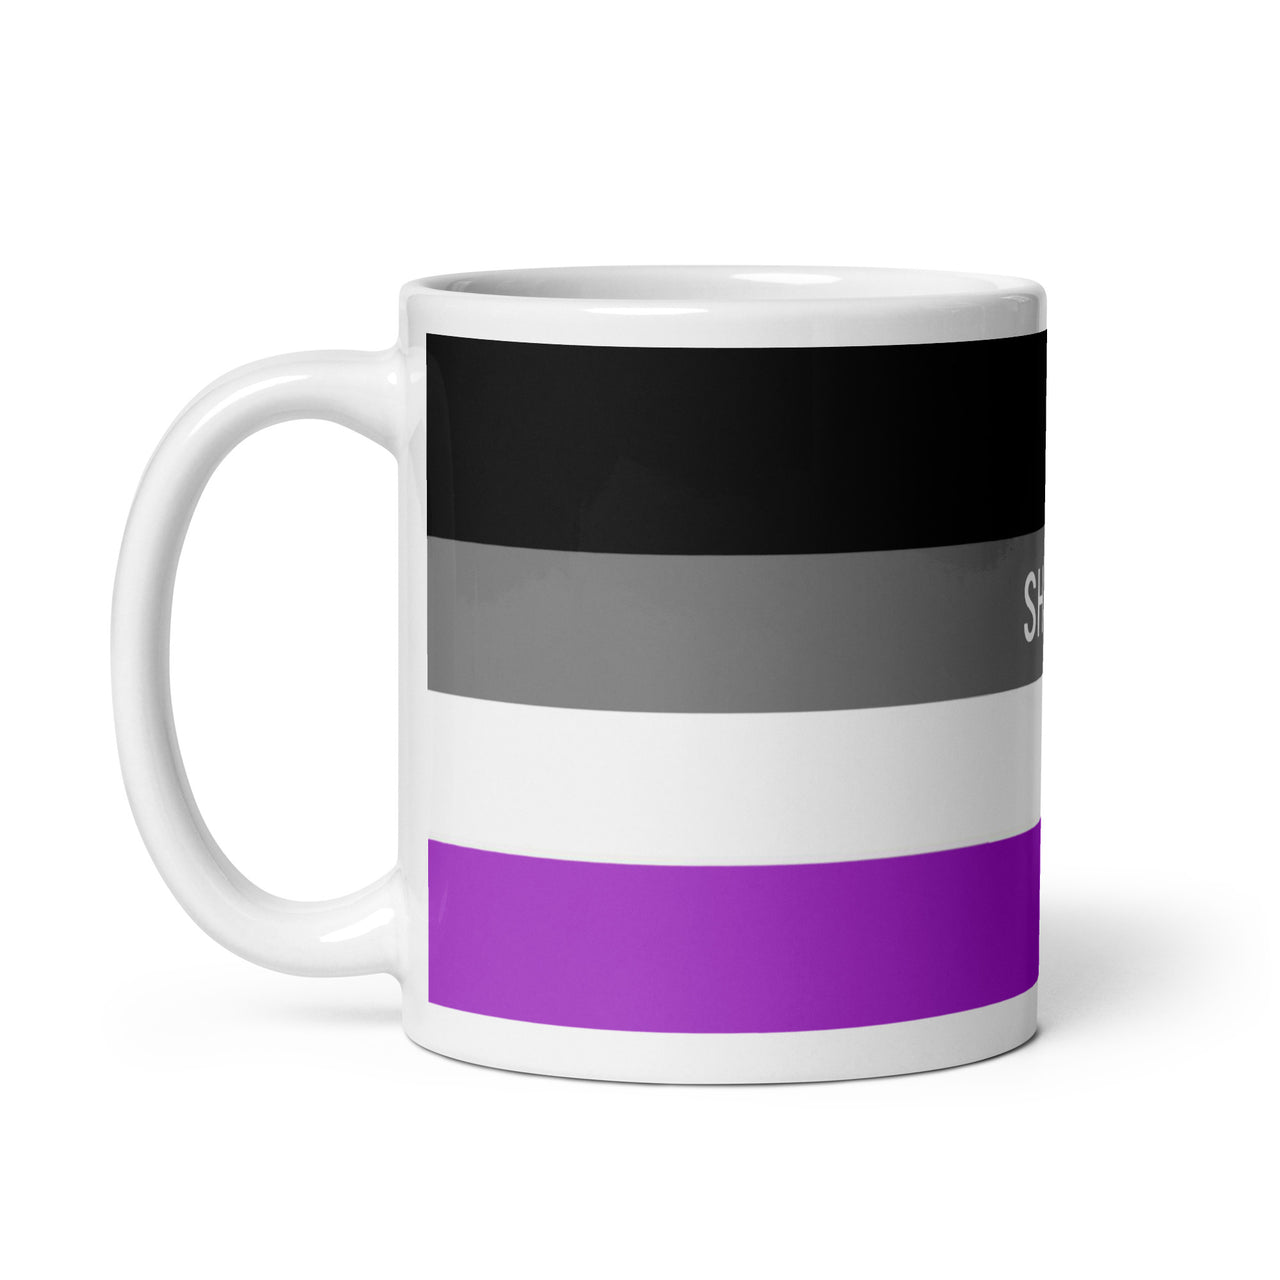 Asexual Flag LGBTQ White Glossy 15oz Coffee Mug SHAVA CO